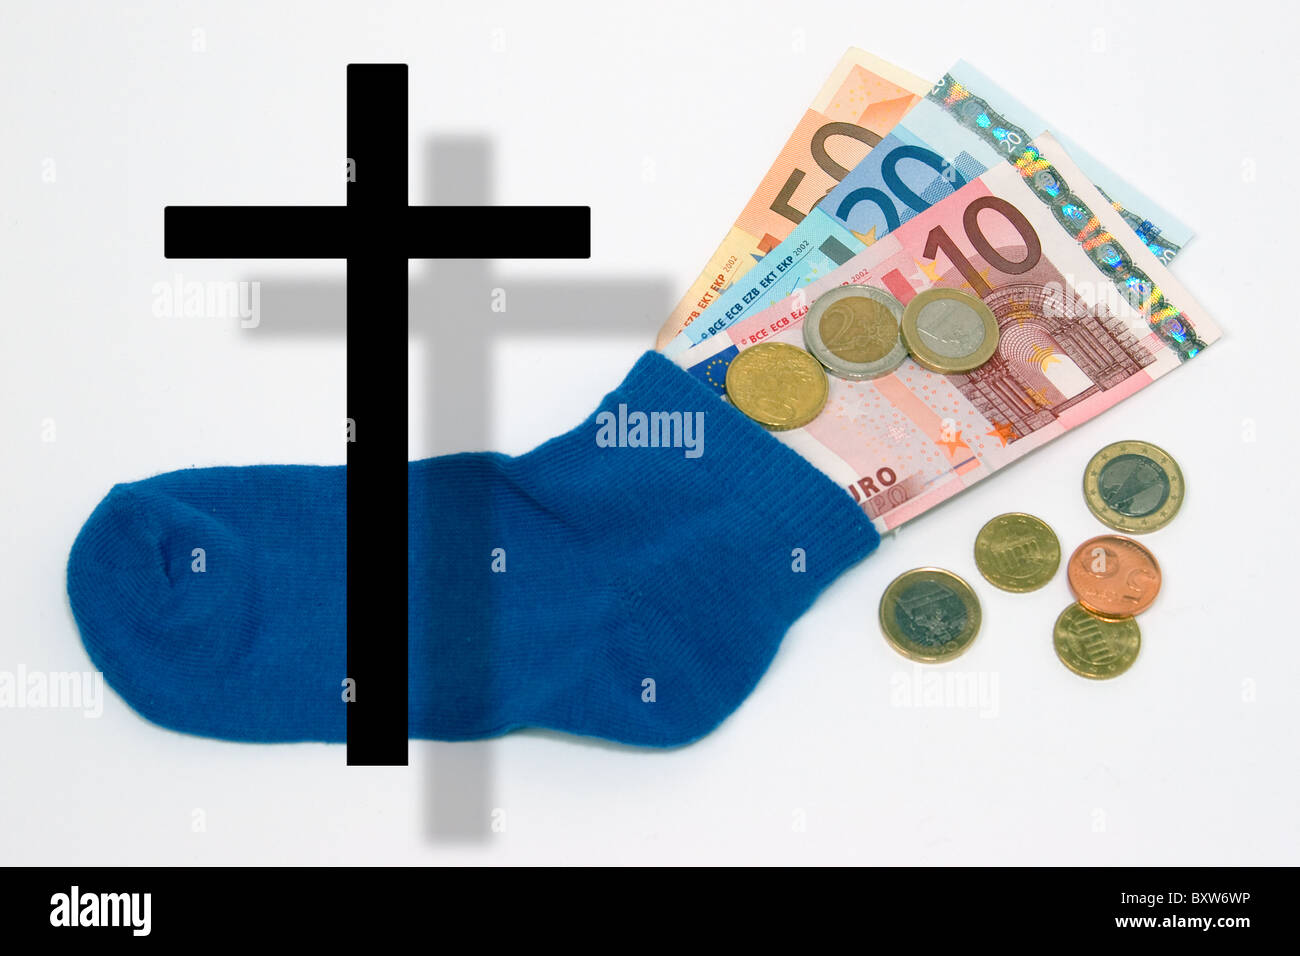 Service de crise de l'effondrement de l'attendu EUR symbole monétaire de l'unique photo de la mort de l'euro a perdu de l'argent épargné Banque D'Images